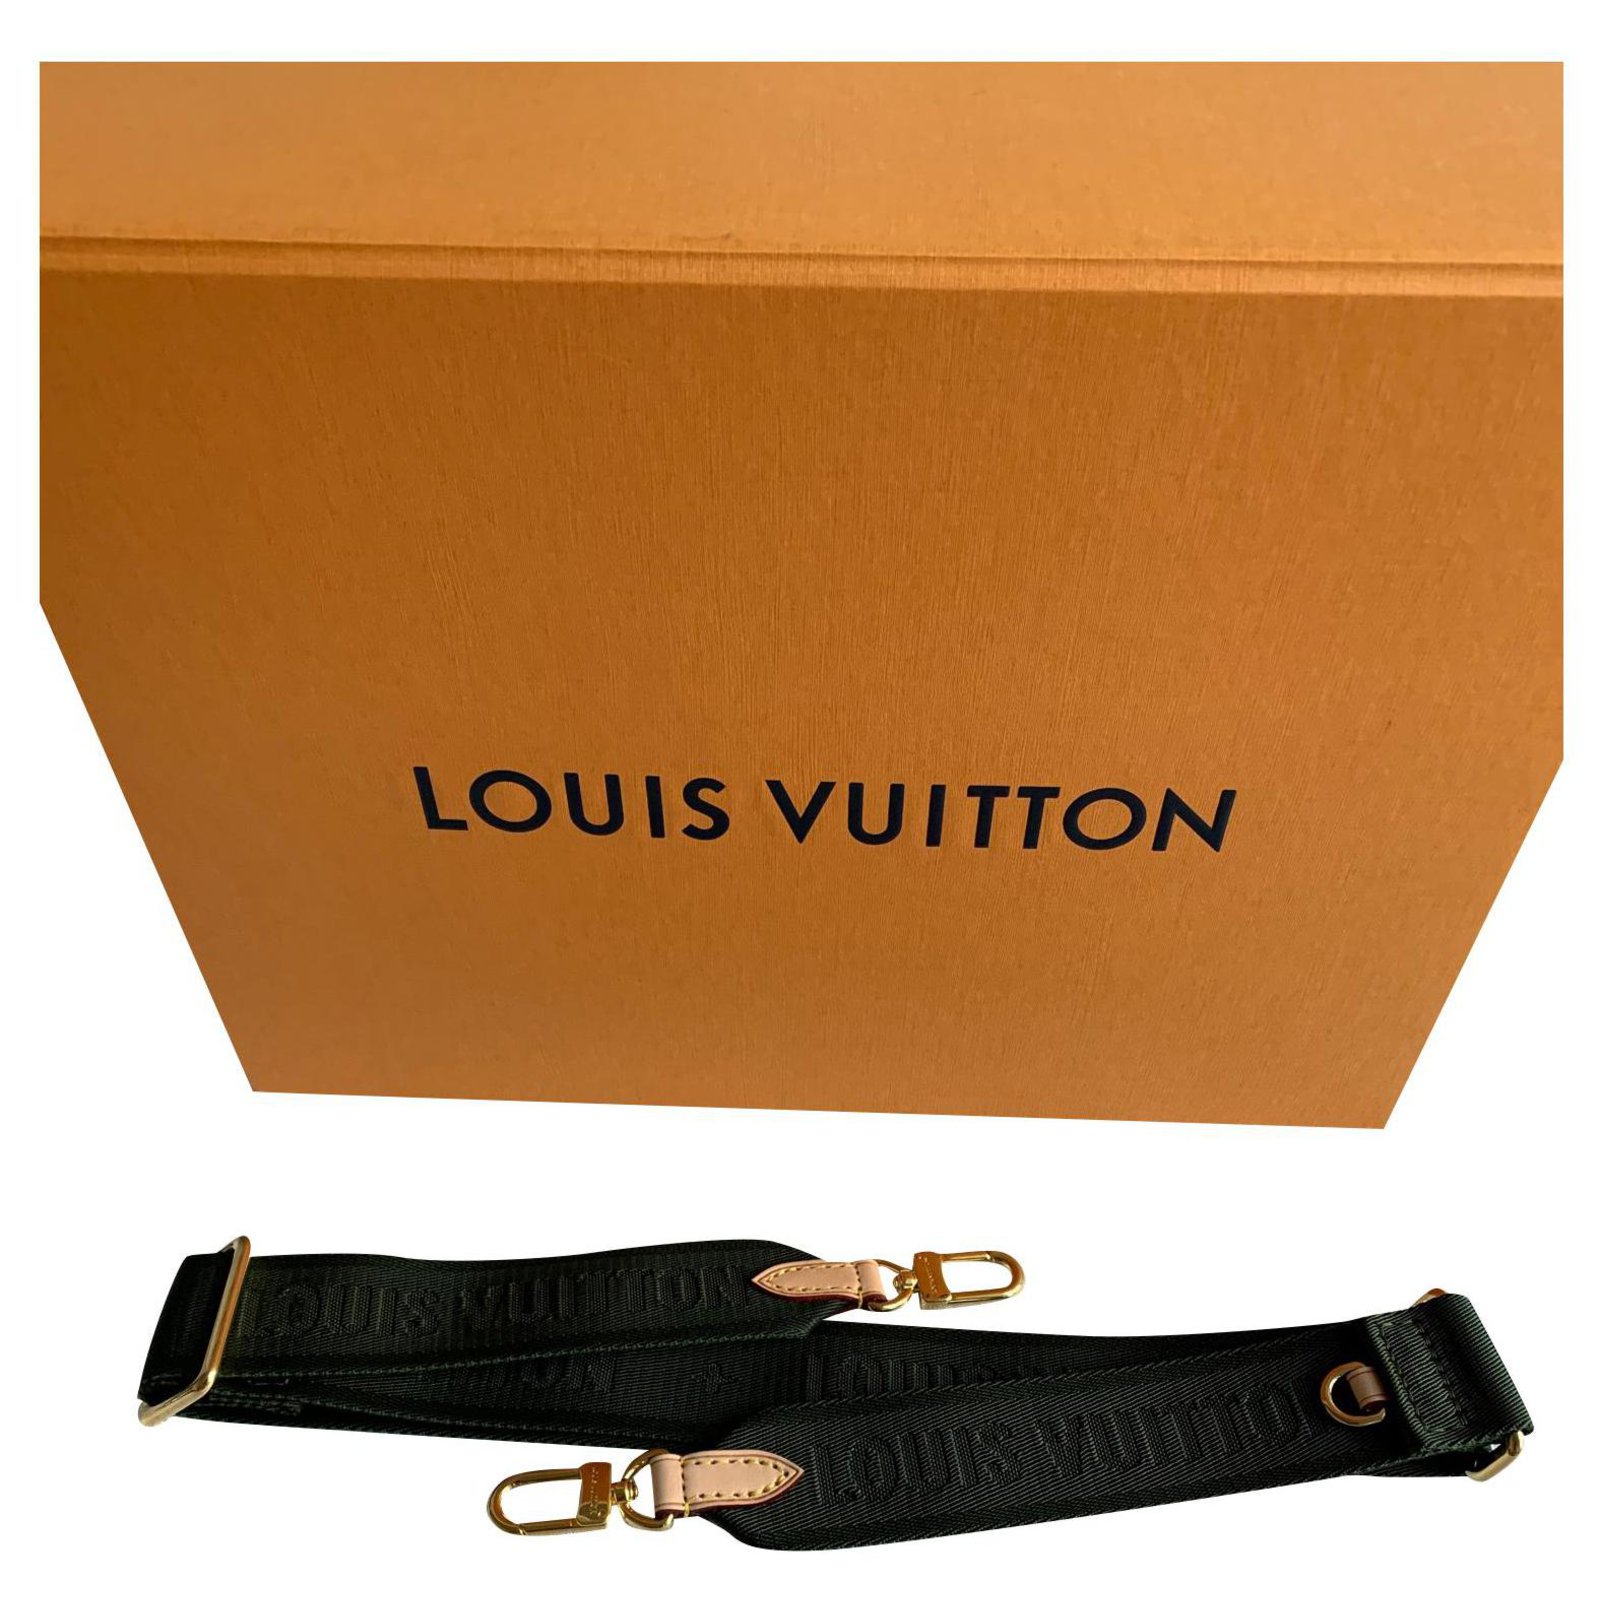 Louis Vuitton, Accessories, Authentic Louis Vuitton Guitar Strap